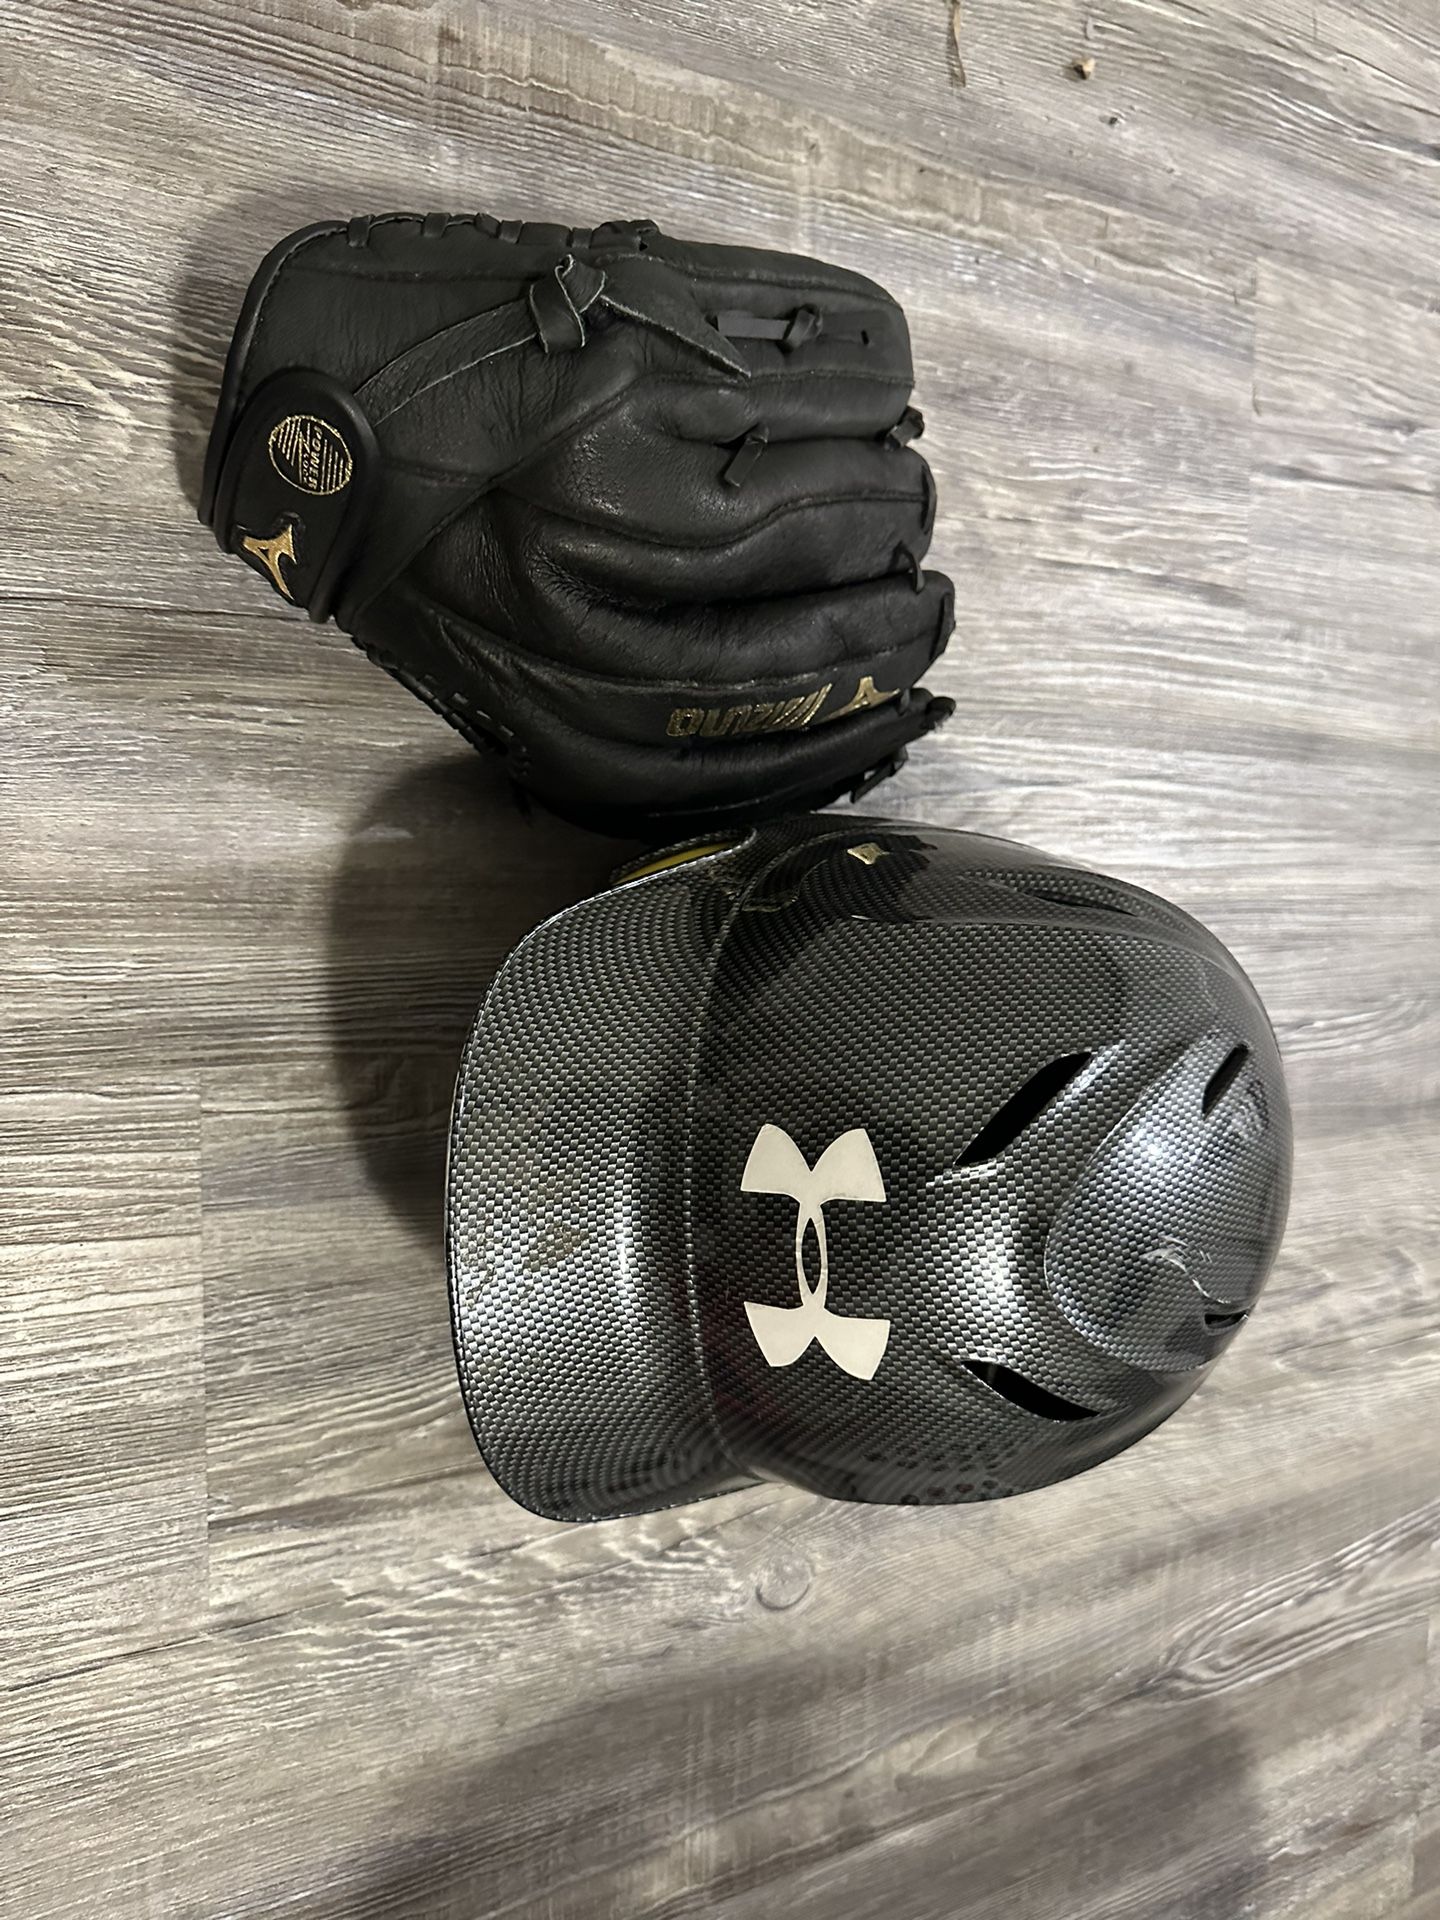 Baseball Helmet & Glove 